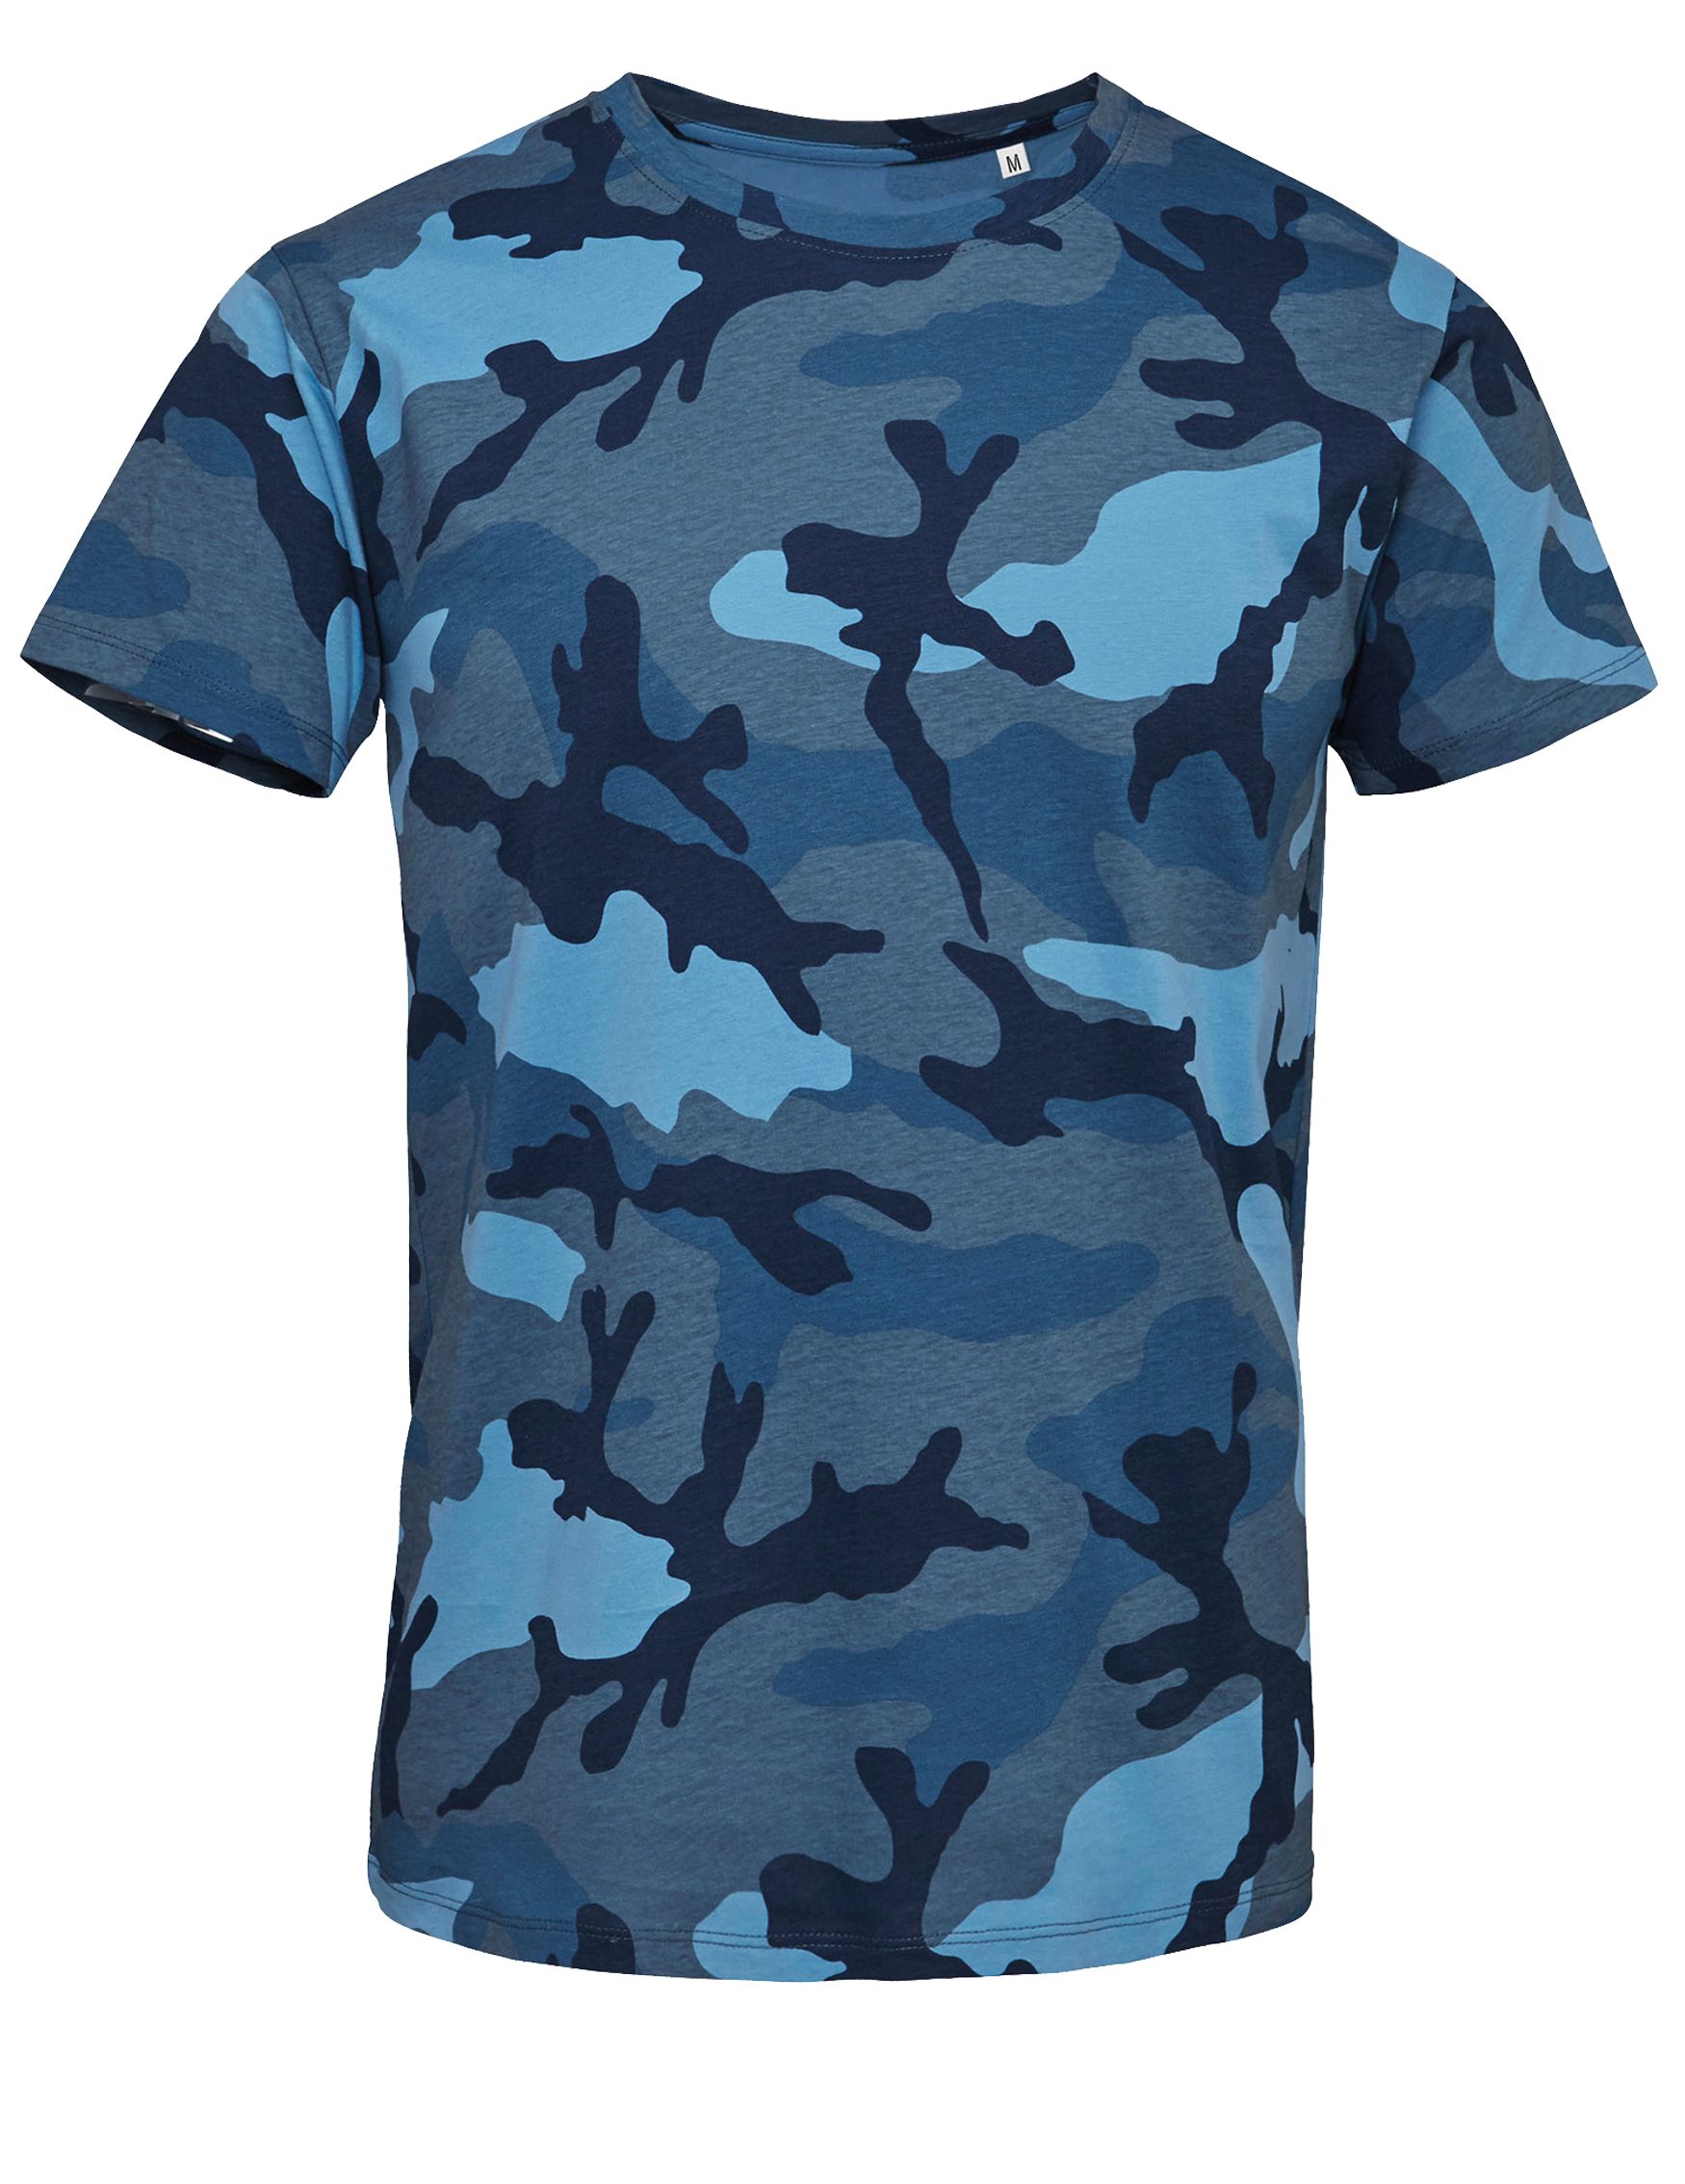 Art & Detail Shirt T-Shirt Army Camouflage Tarn Farben Camo in Grün Blau und Grau lieferbar, Military, Look Blue Camo